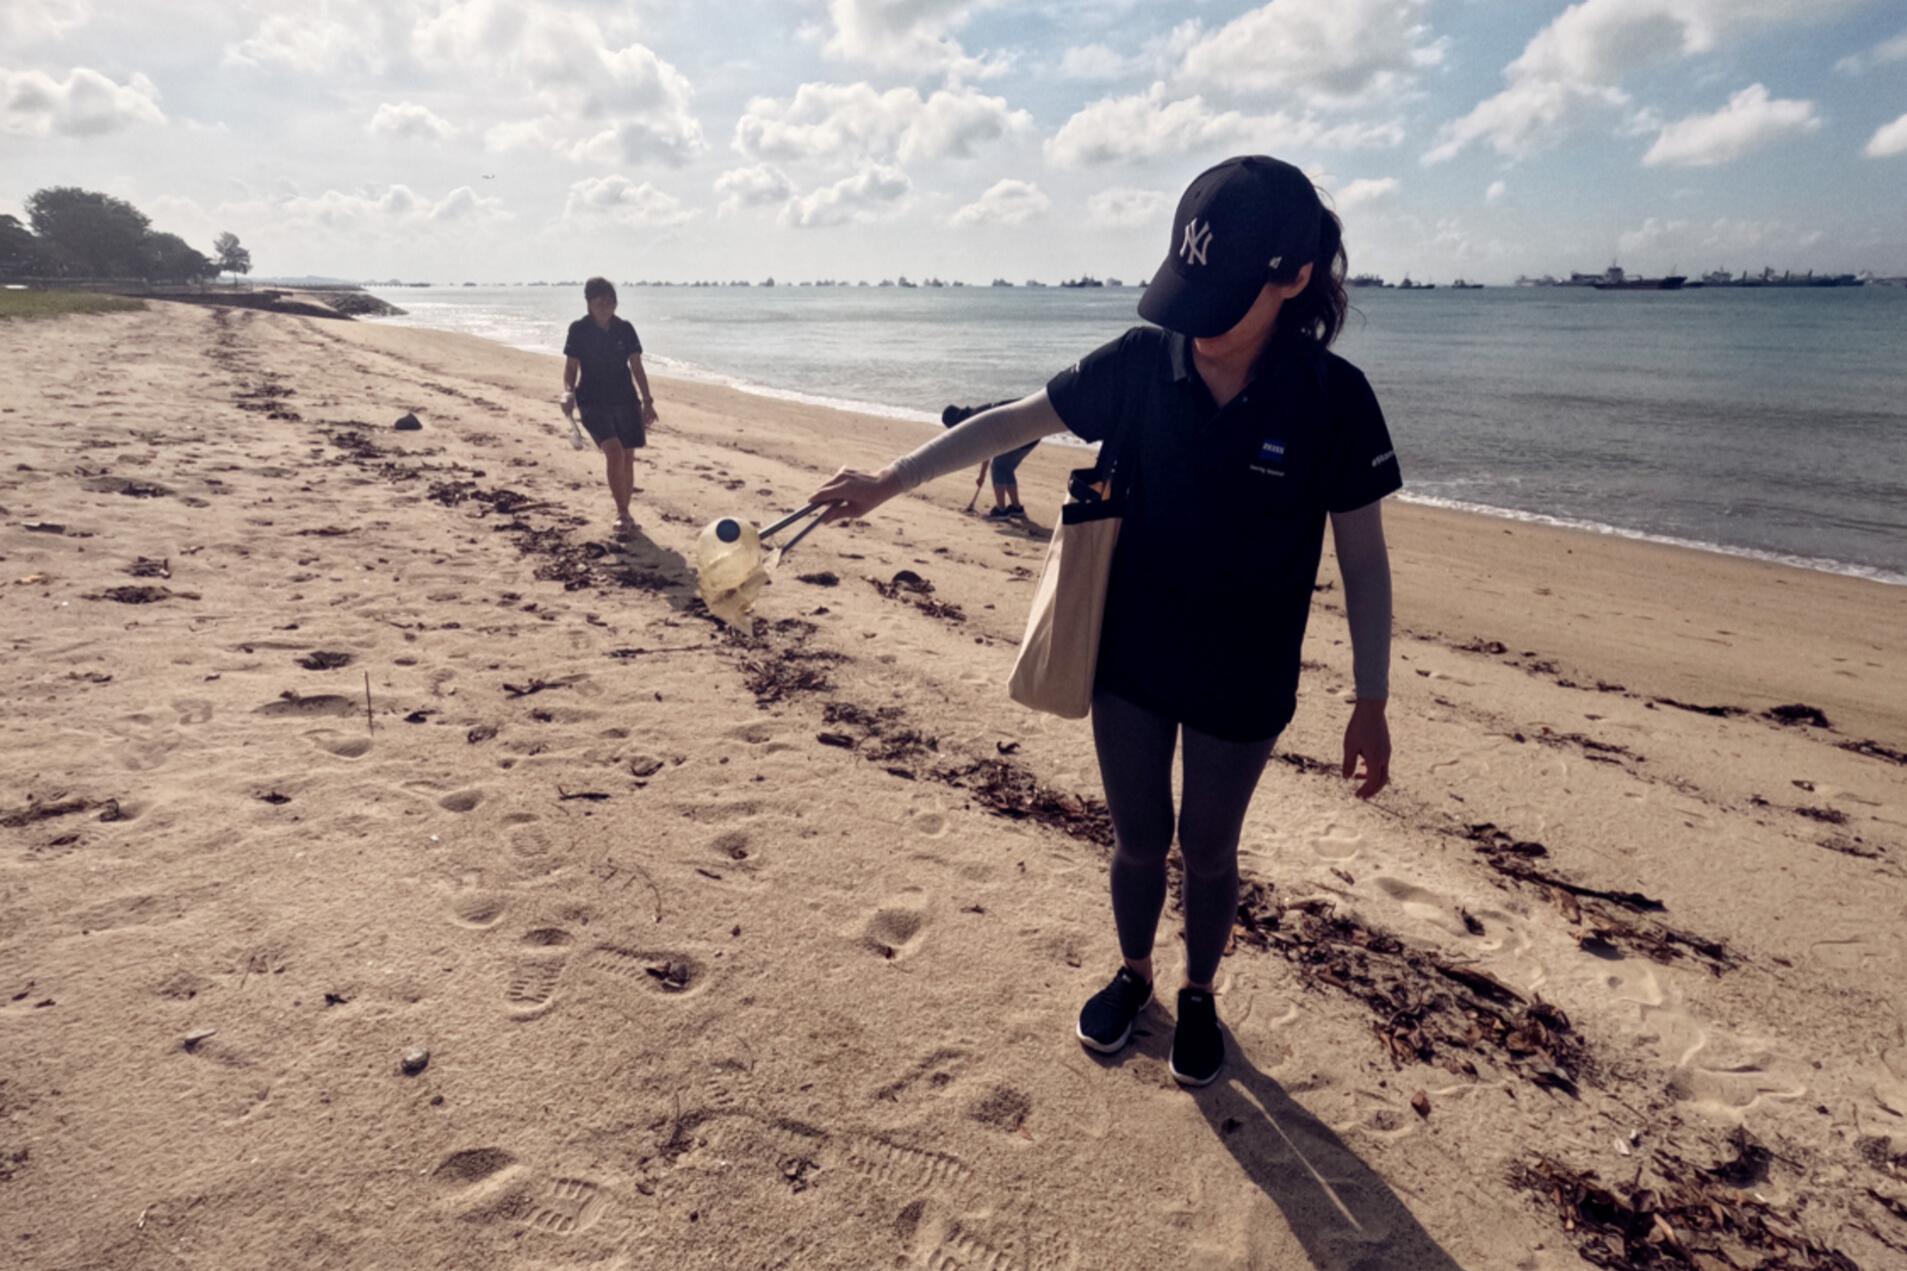 ZEISS Mitarbeitende in Singapur sammeln Müll am Earth Day